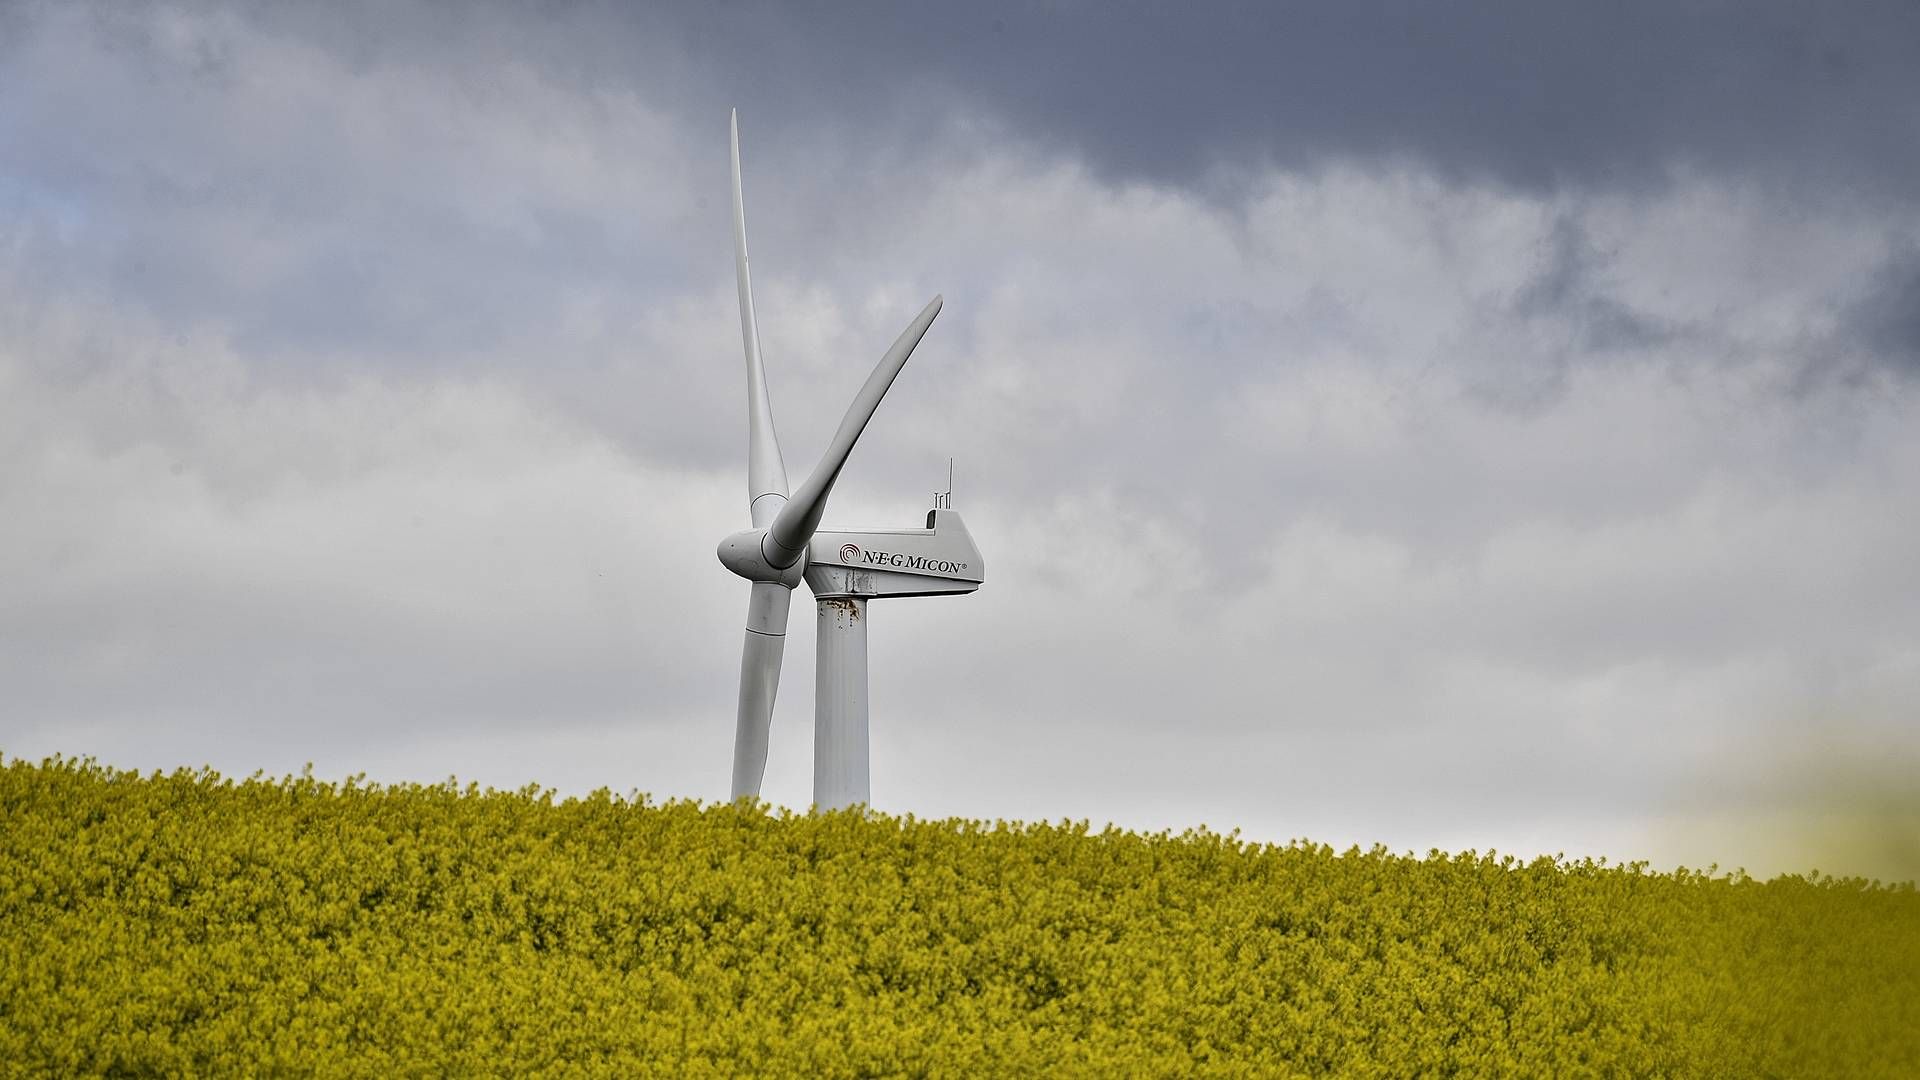 Gennem intelligent vindmøllesmøring vil Hove sikre vindmøller mod nedbrud. | Foto: Ernst van Norde